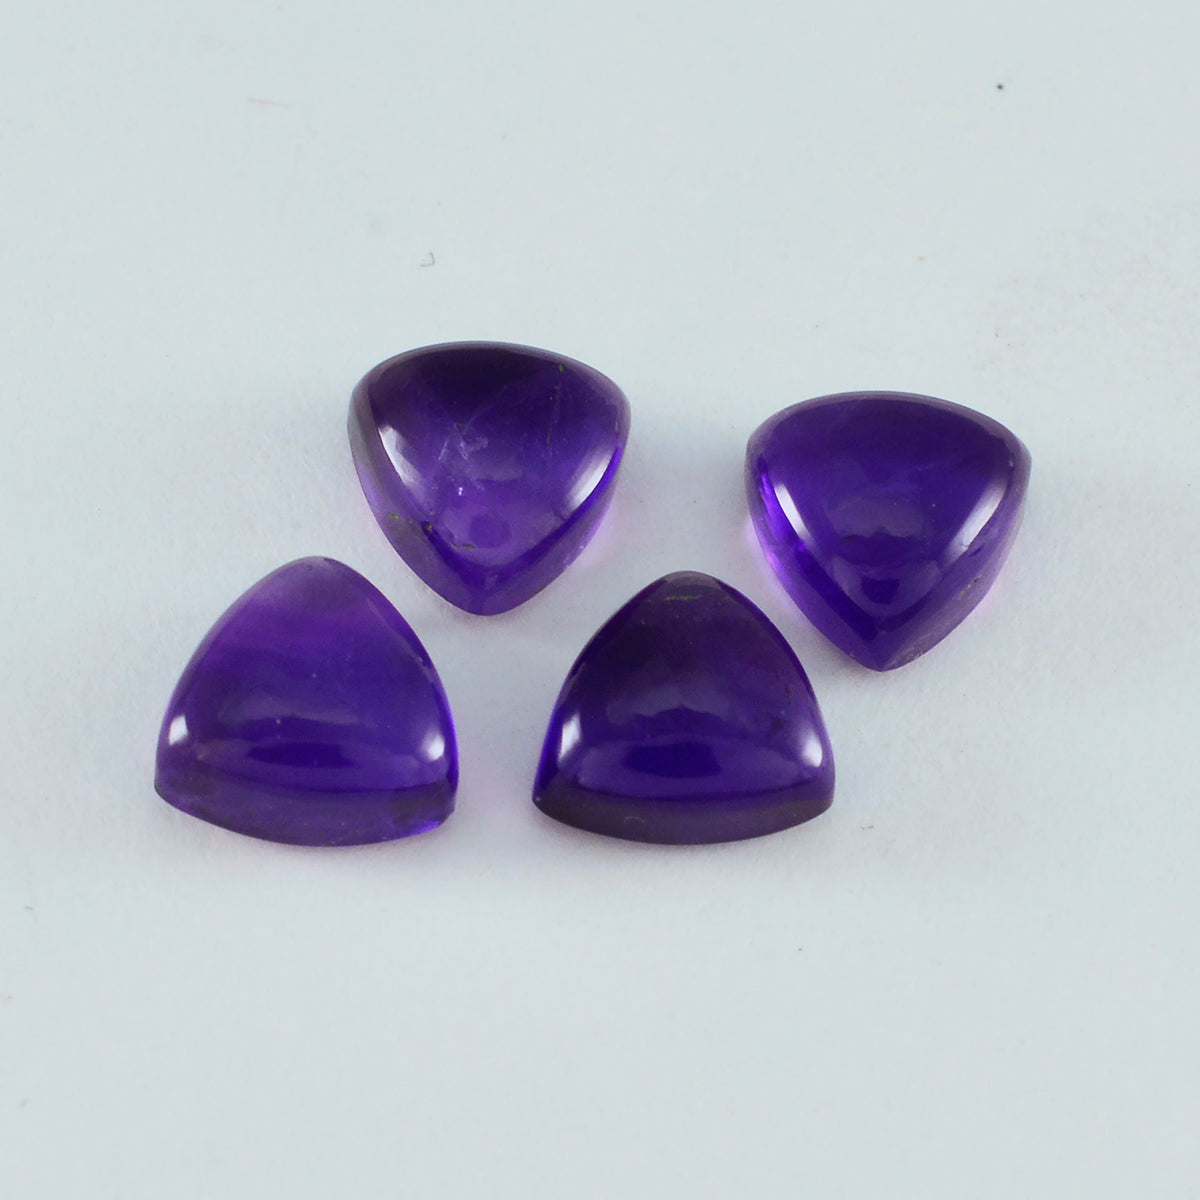 Riyogems 1 Stück violetter Amethyst-Cabochon, 4 x 4 mm, Billionenform, hübscher Qualitäts-Edelstein